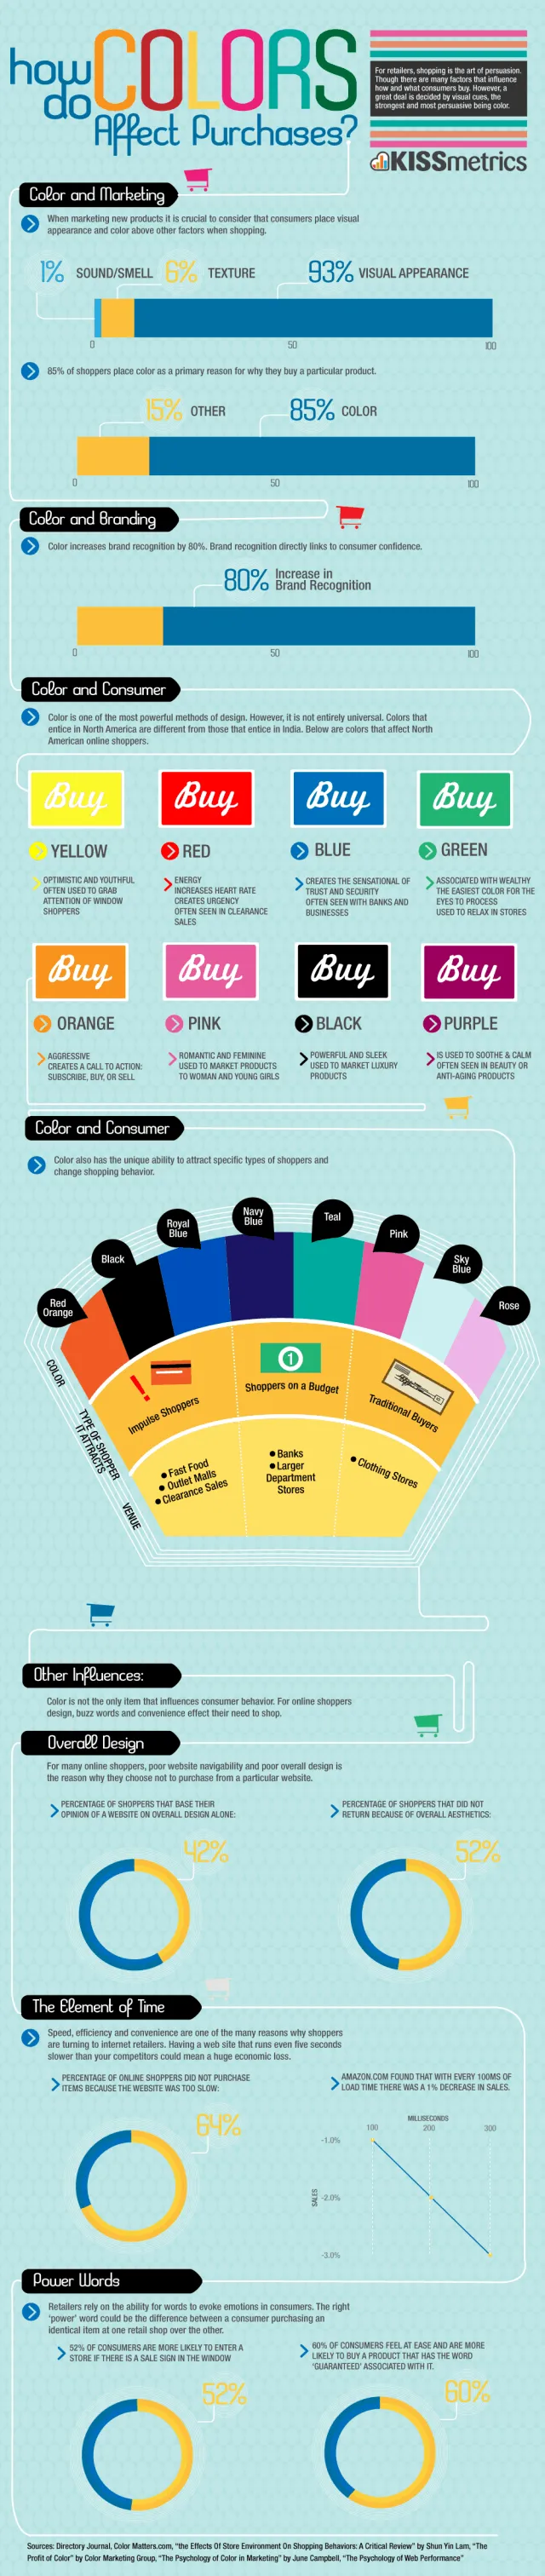 colorandpurchases infographic1 640x3024